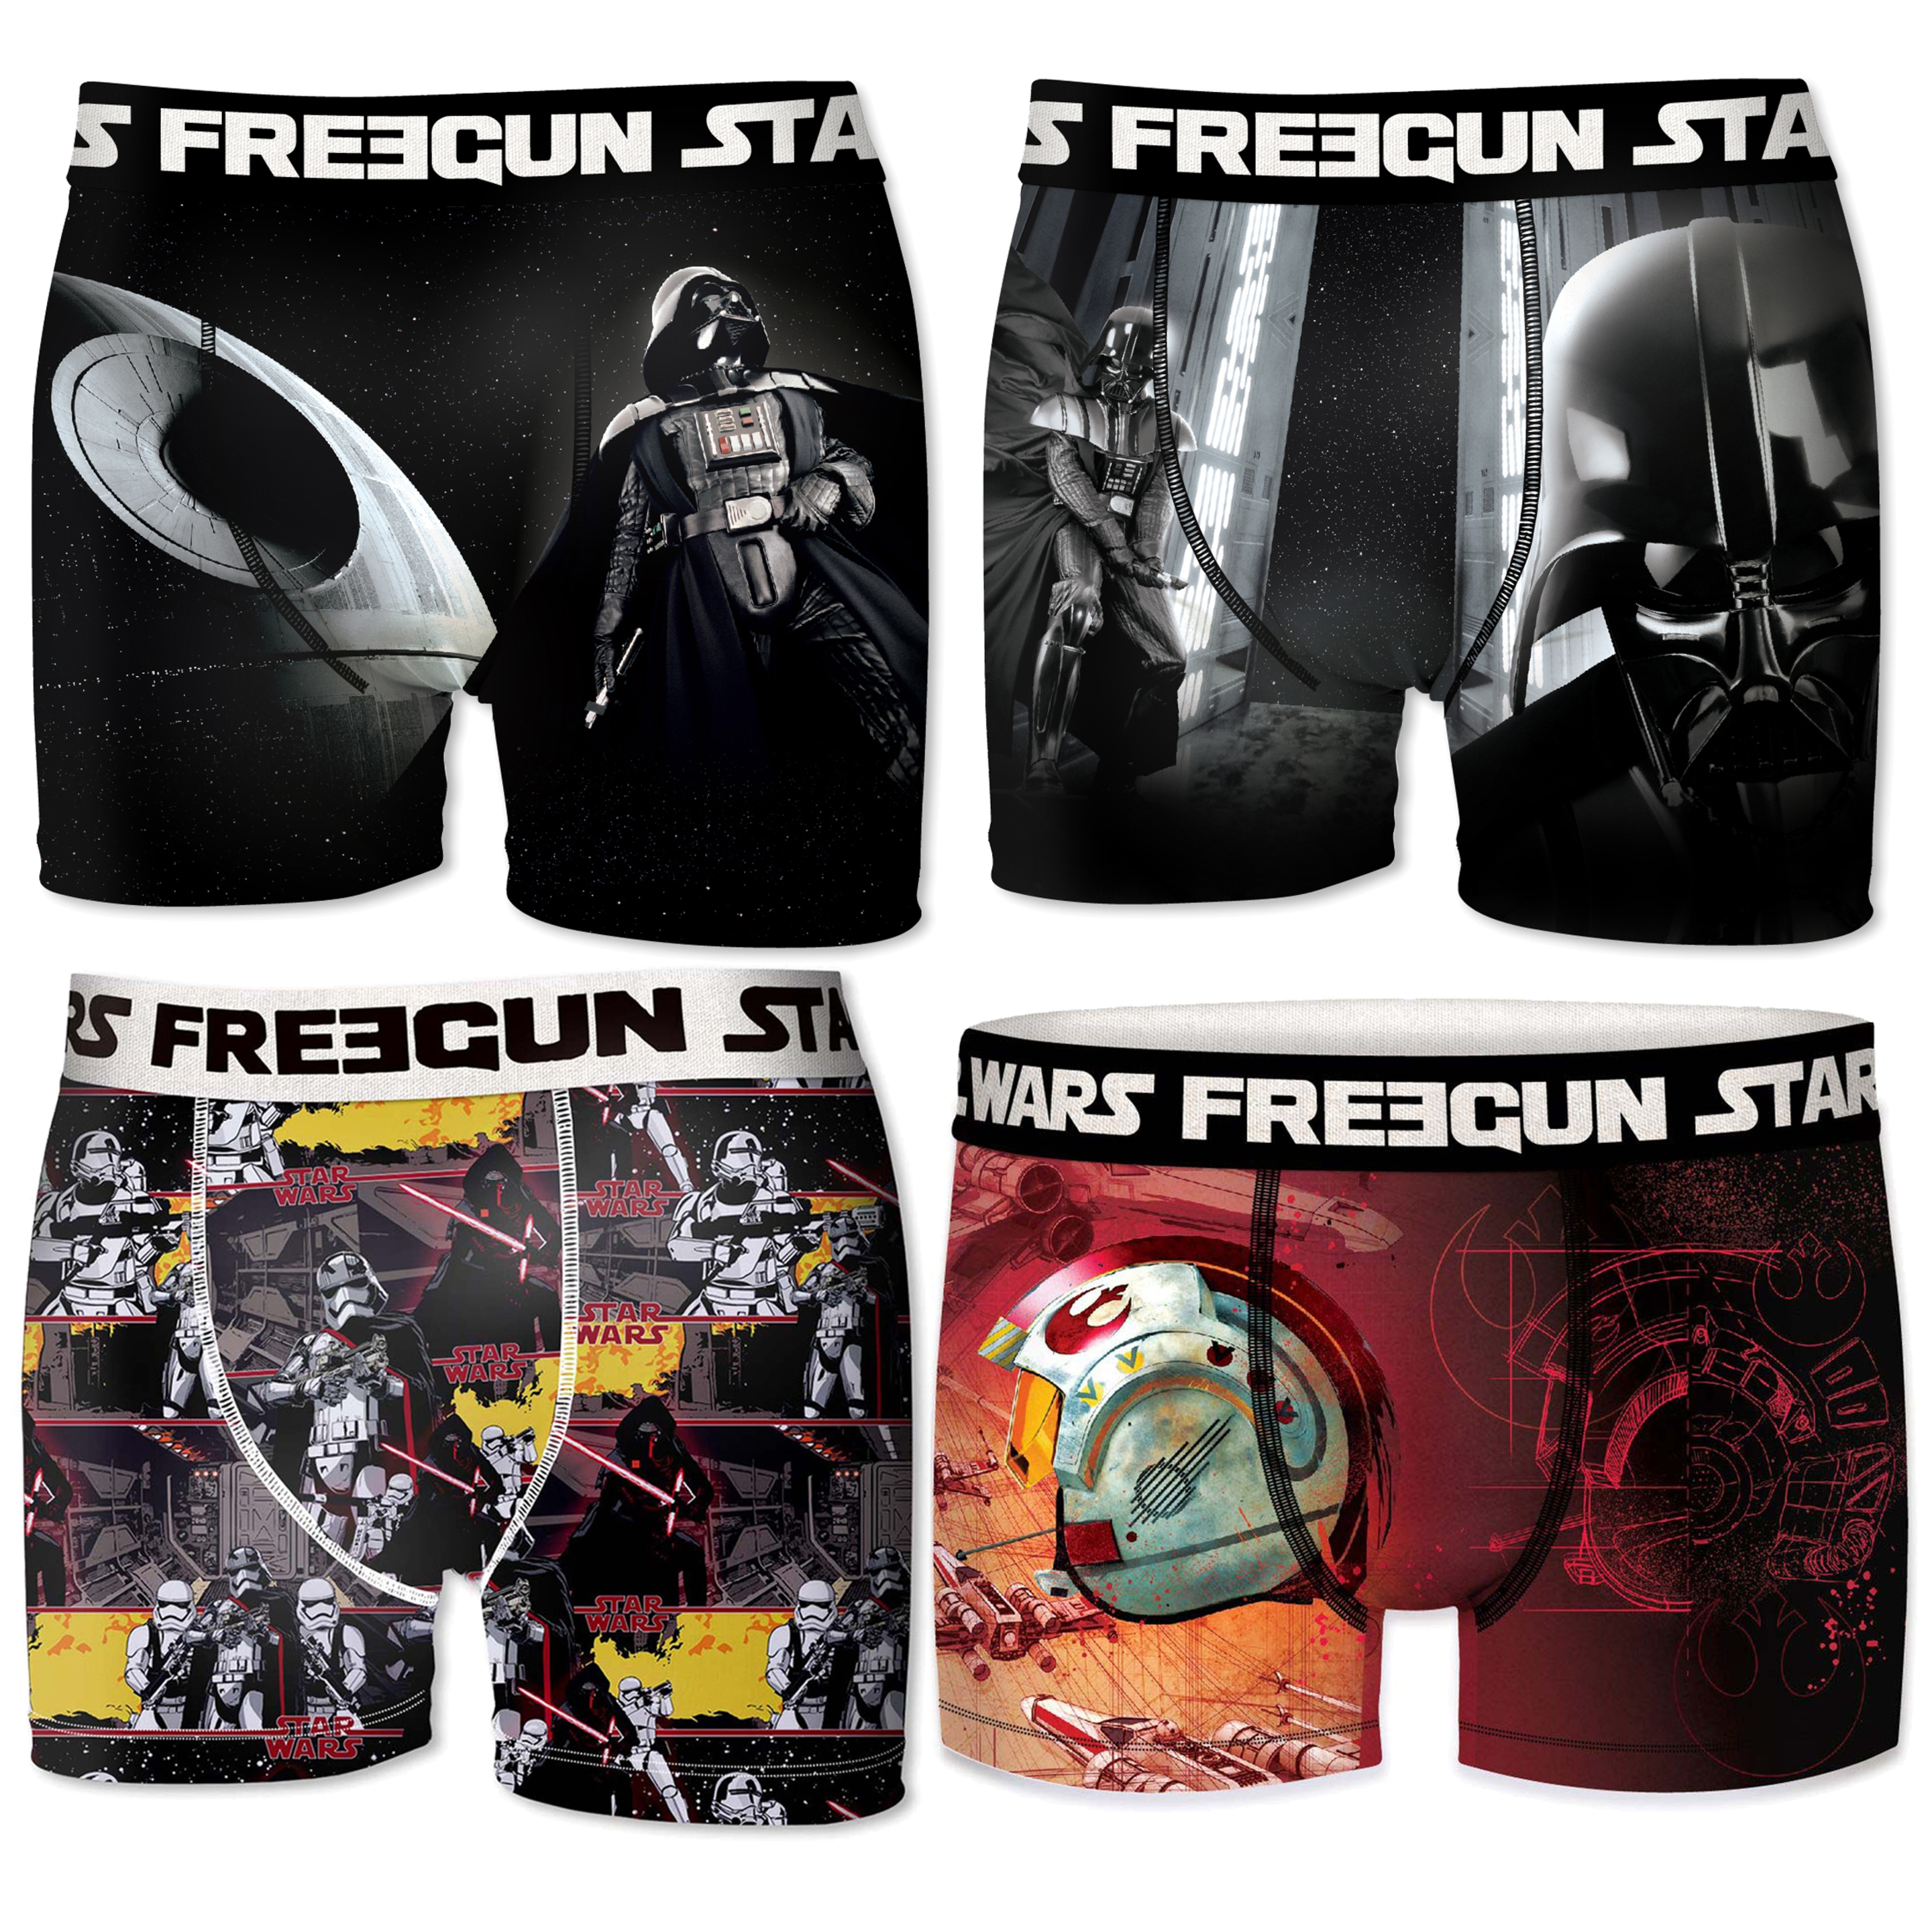 Calzoncillos Freegun Star Wars Pack 6